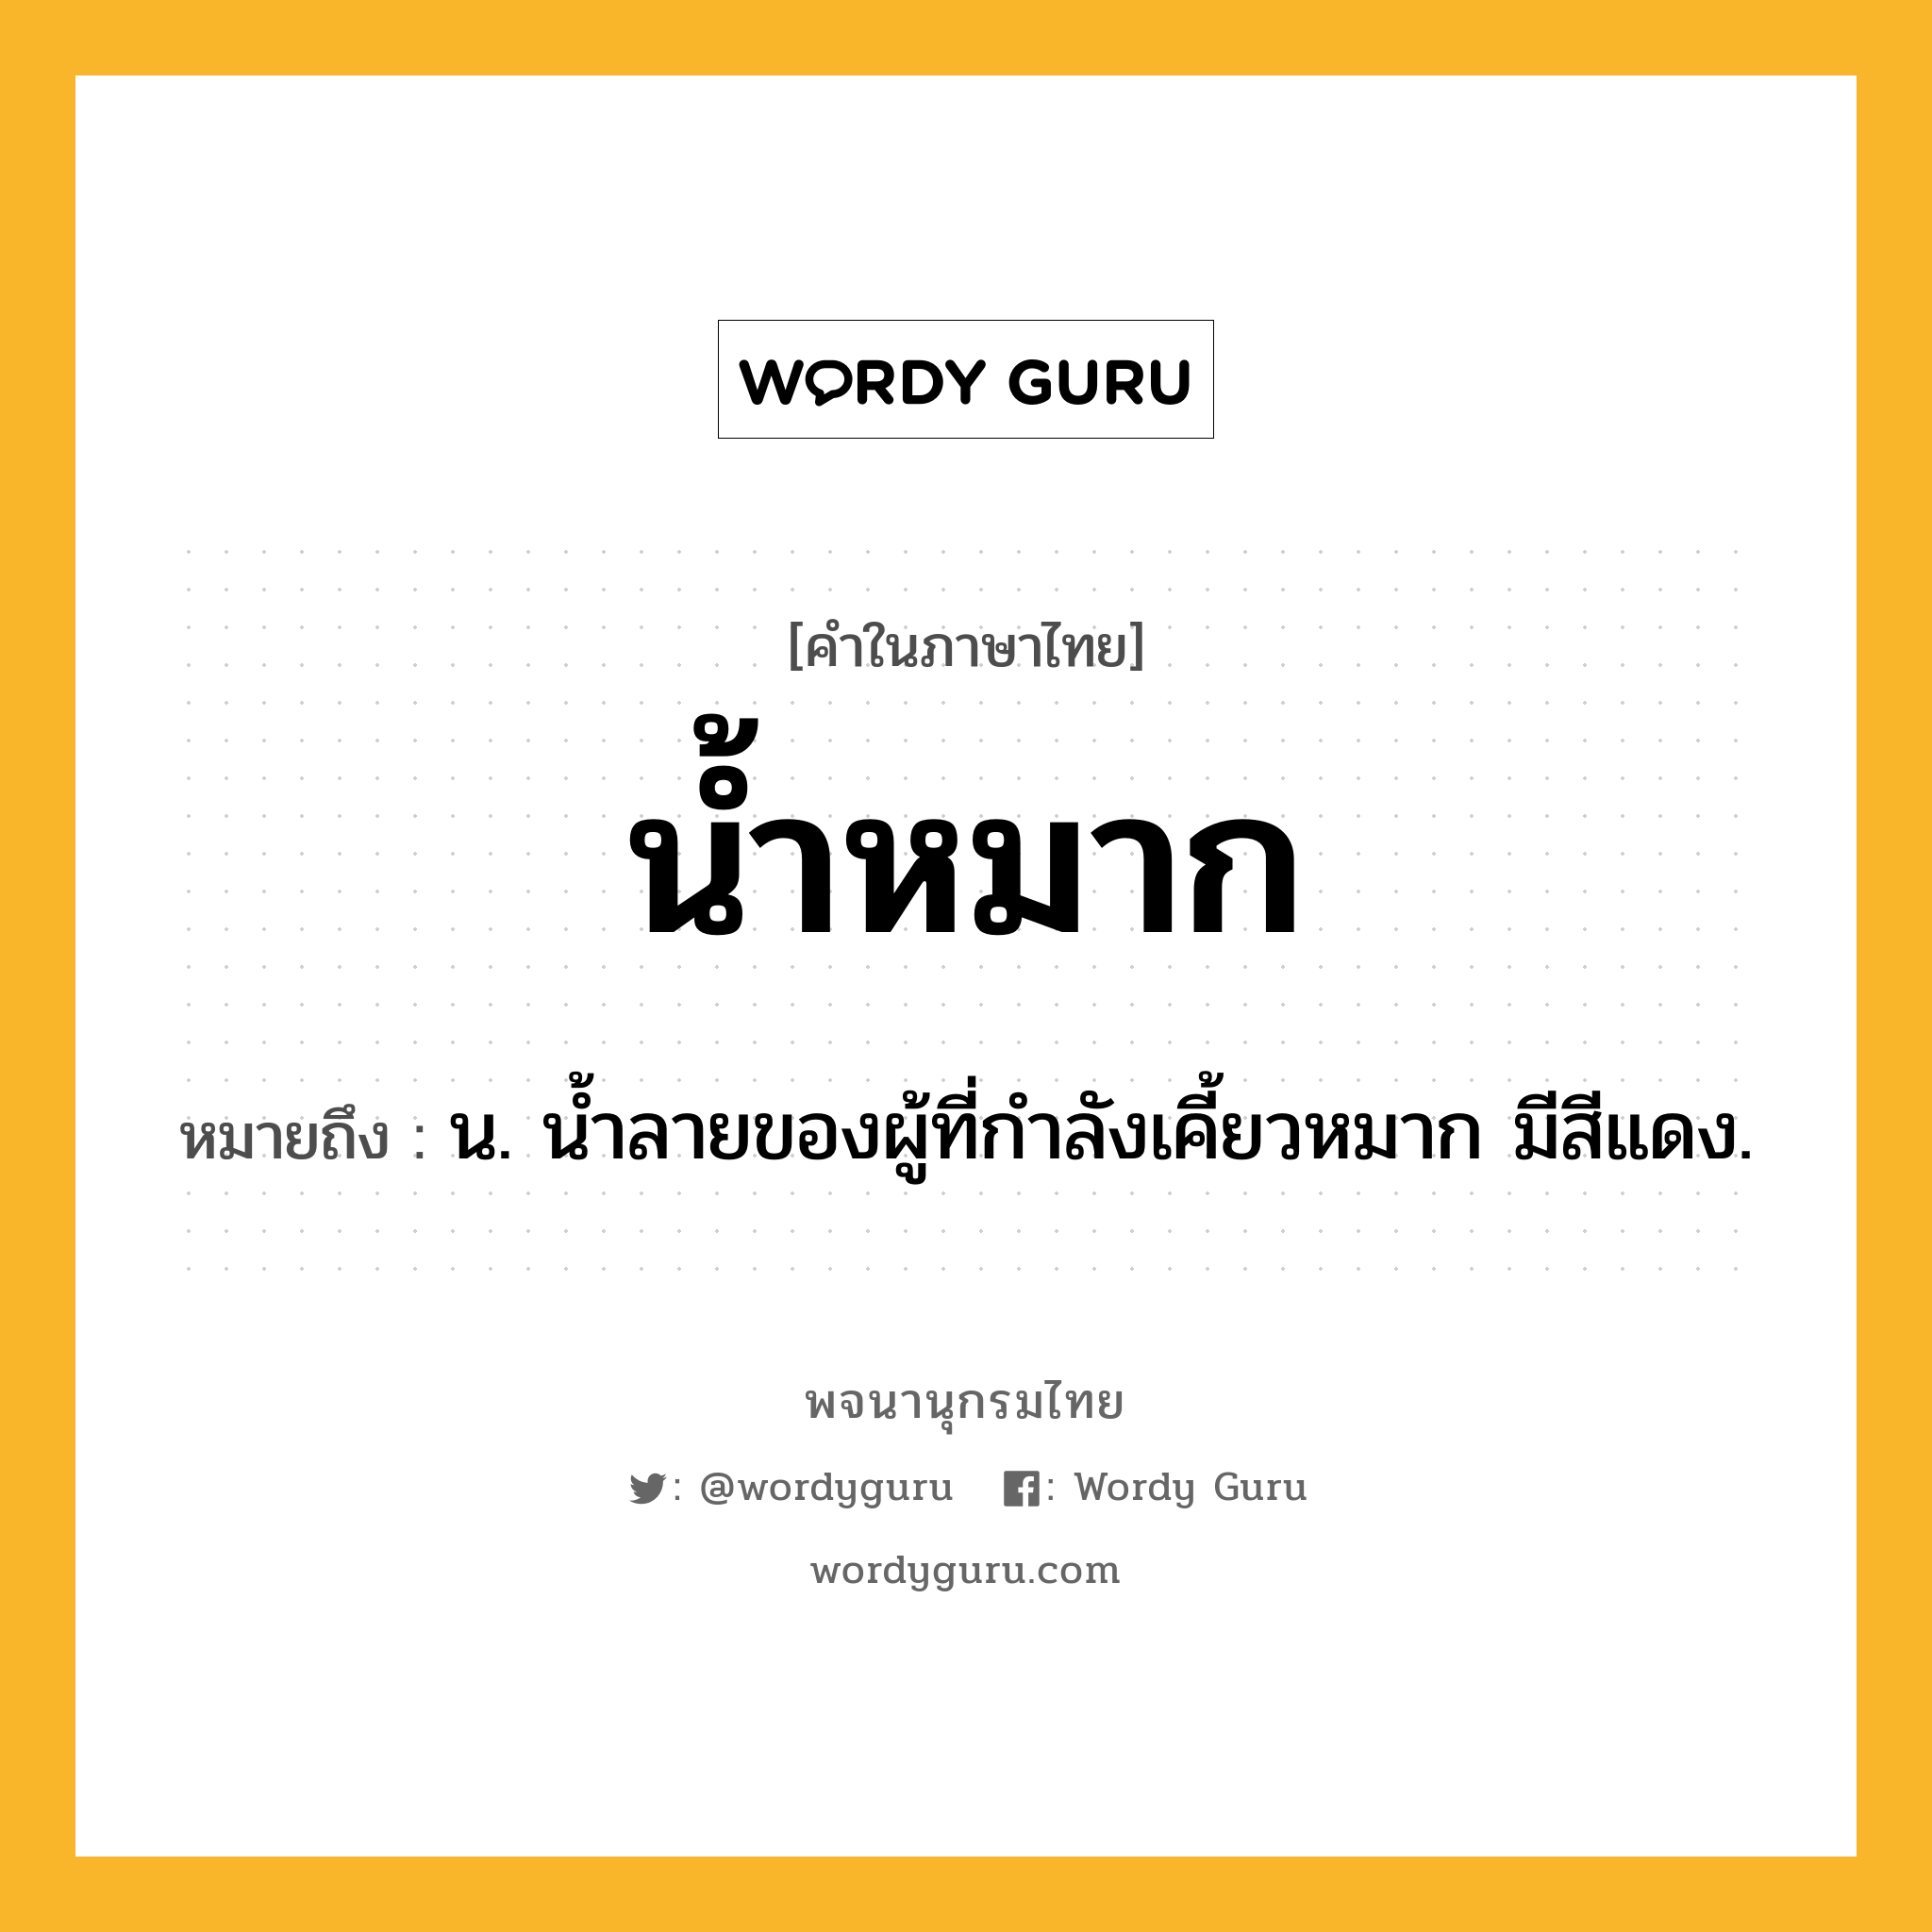 น้ำหมาก หมายถึงอะไร?, คำในภาษาไทย น้ำหมาก หมายถึง น. นํ้าลายของผู้ที่กําลังเคี้ยวหมาก มีสีแดง.